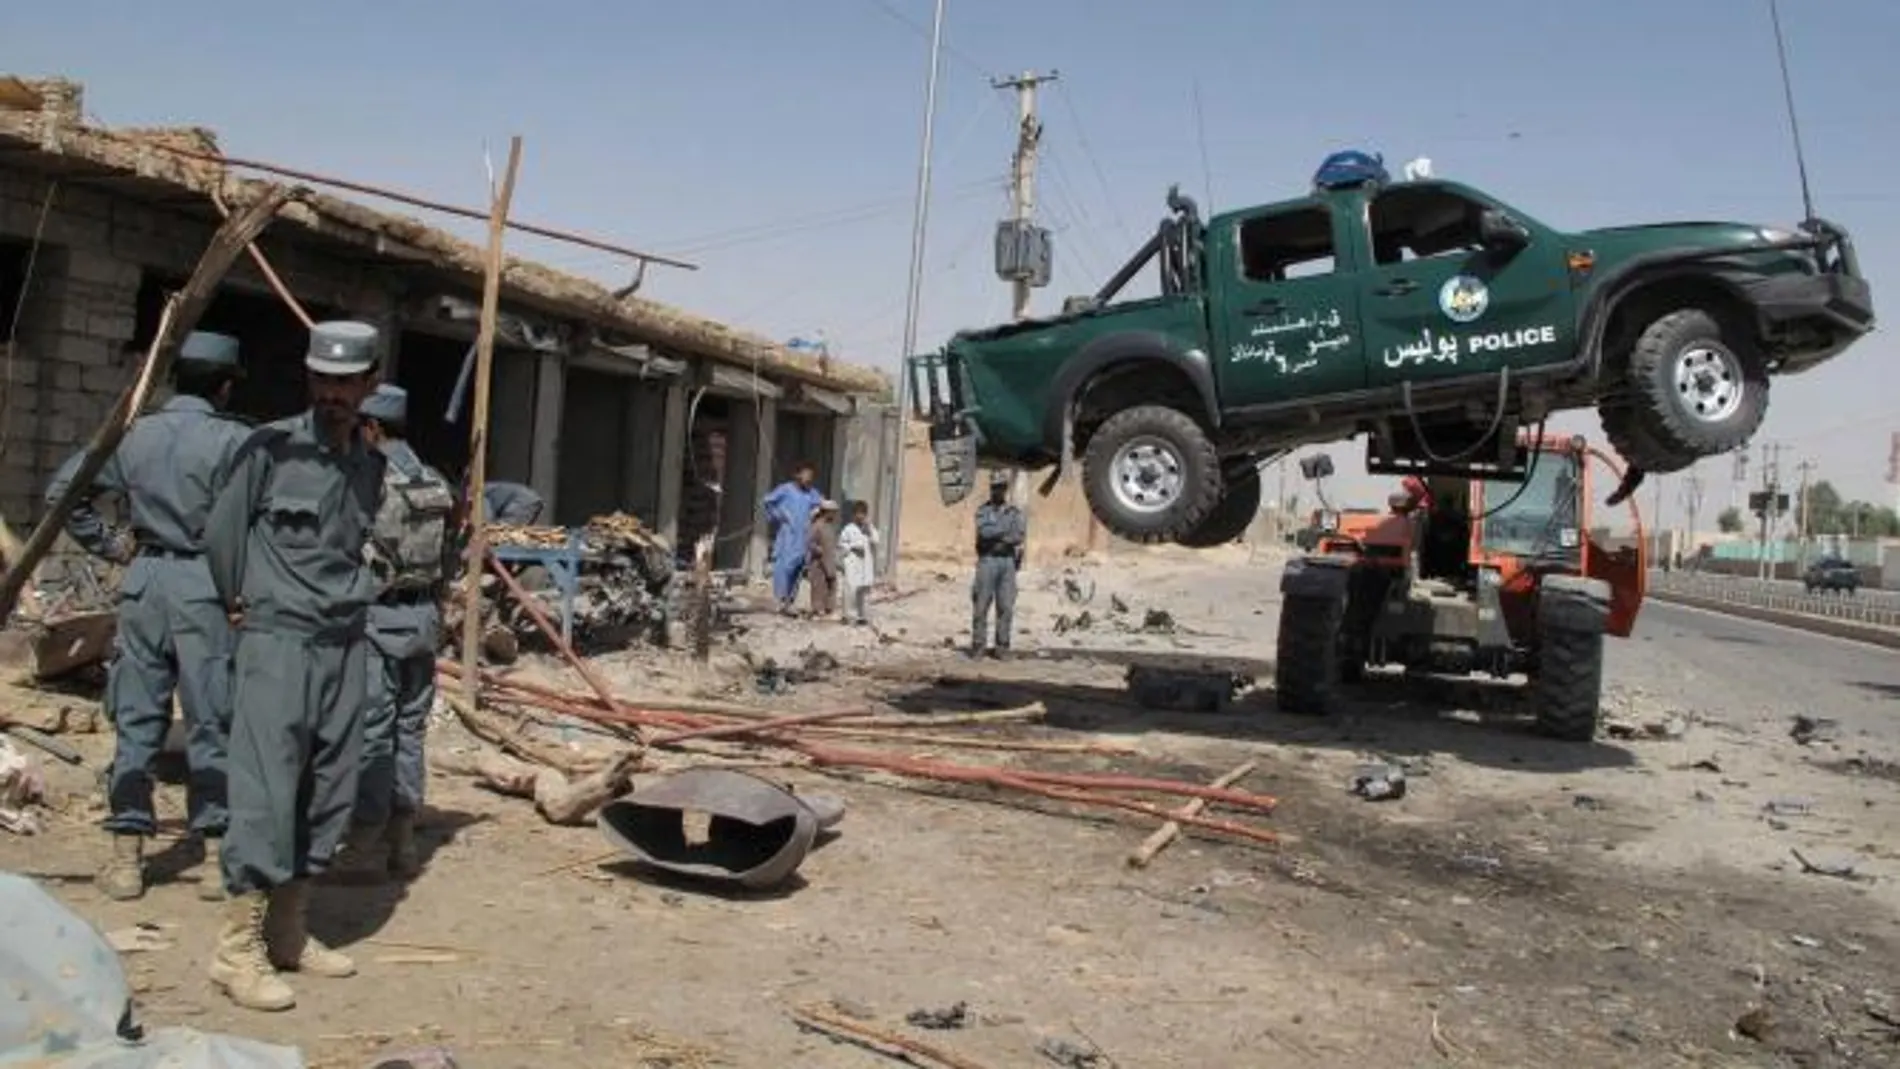 Policías inspeccionan la escena donde explotó ayer un carro bomba en Lashkar Gag, Afganistán